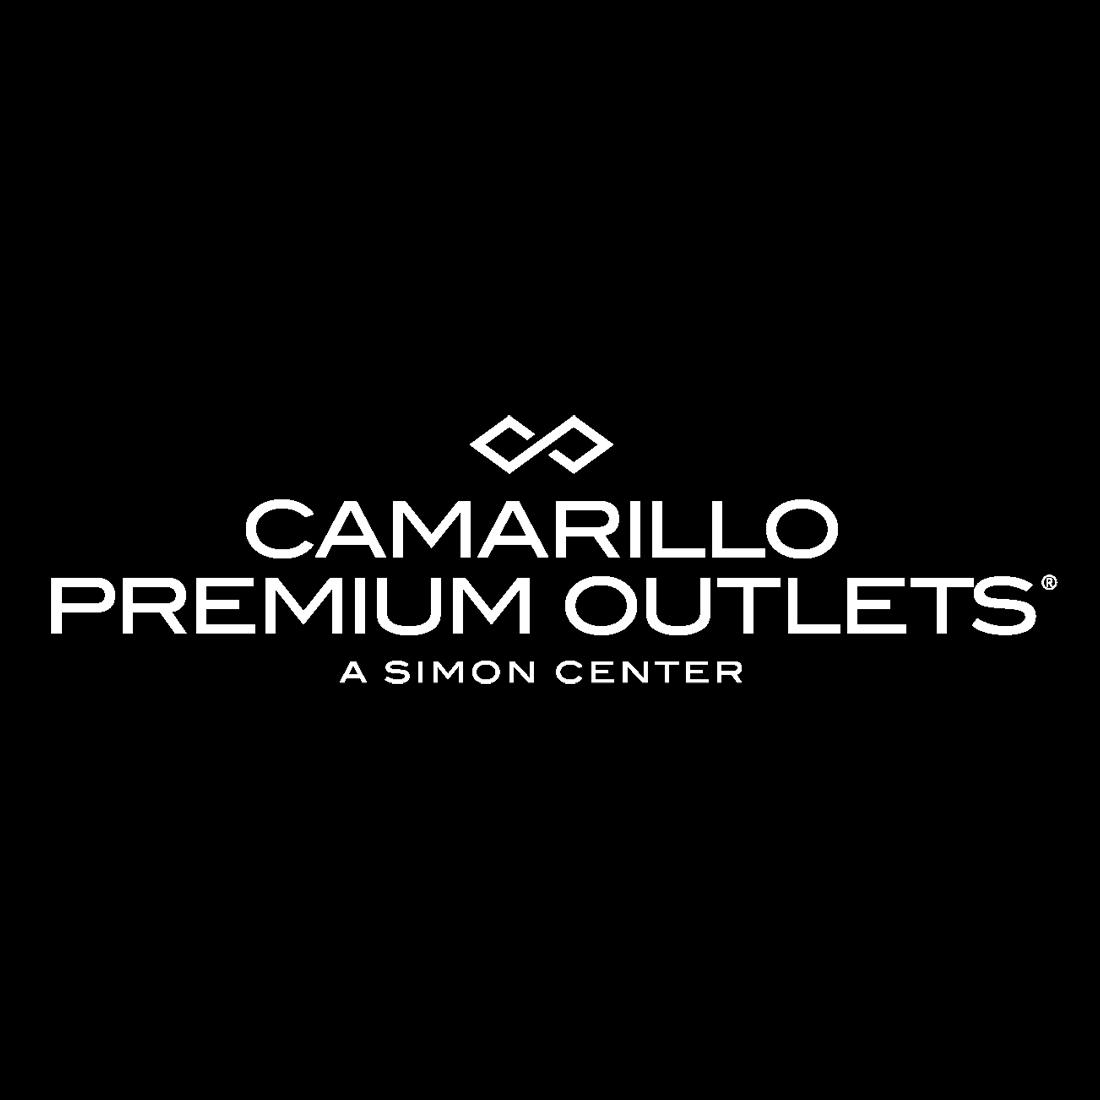 Camarillo Premium Outlets - Camarillo, CA - Business Profile